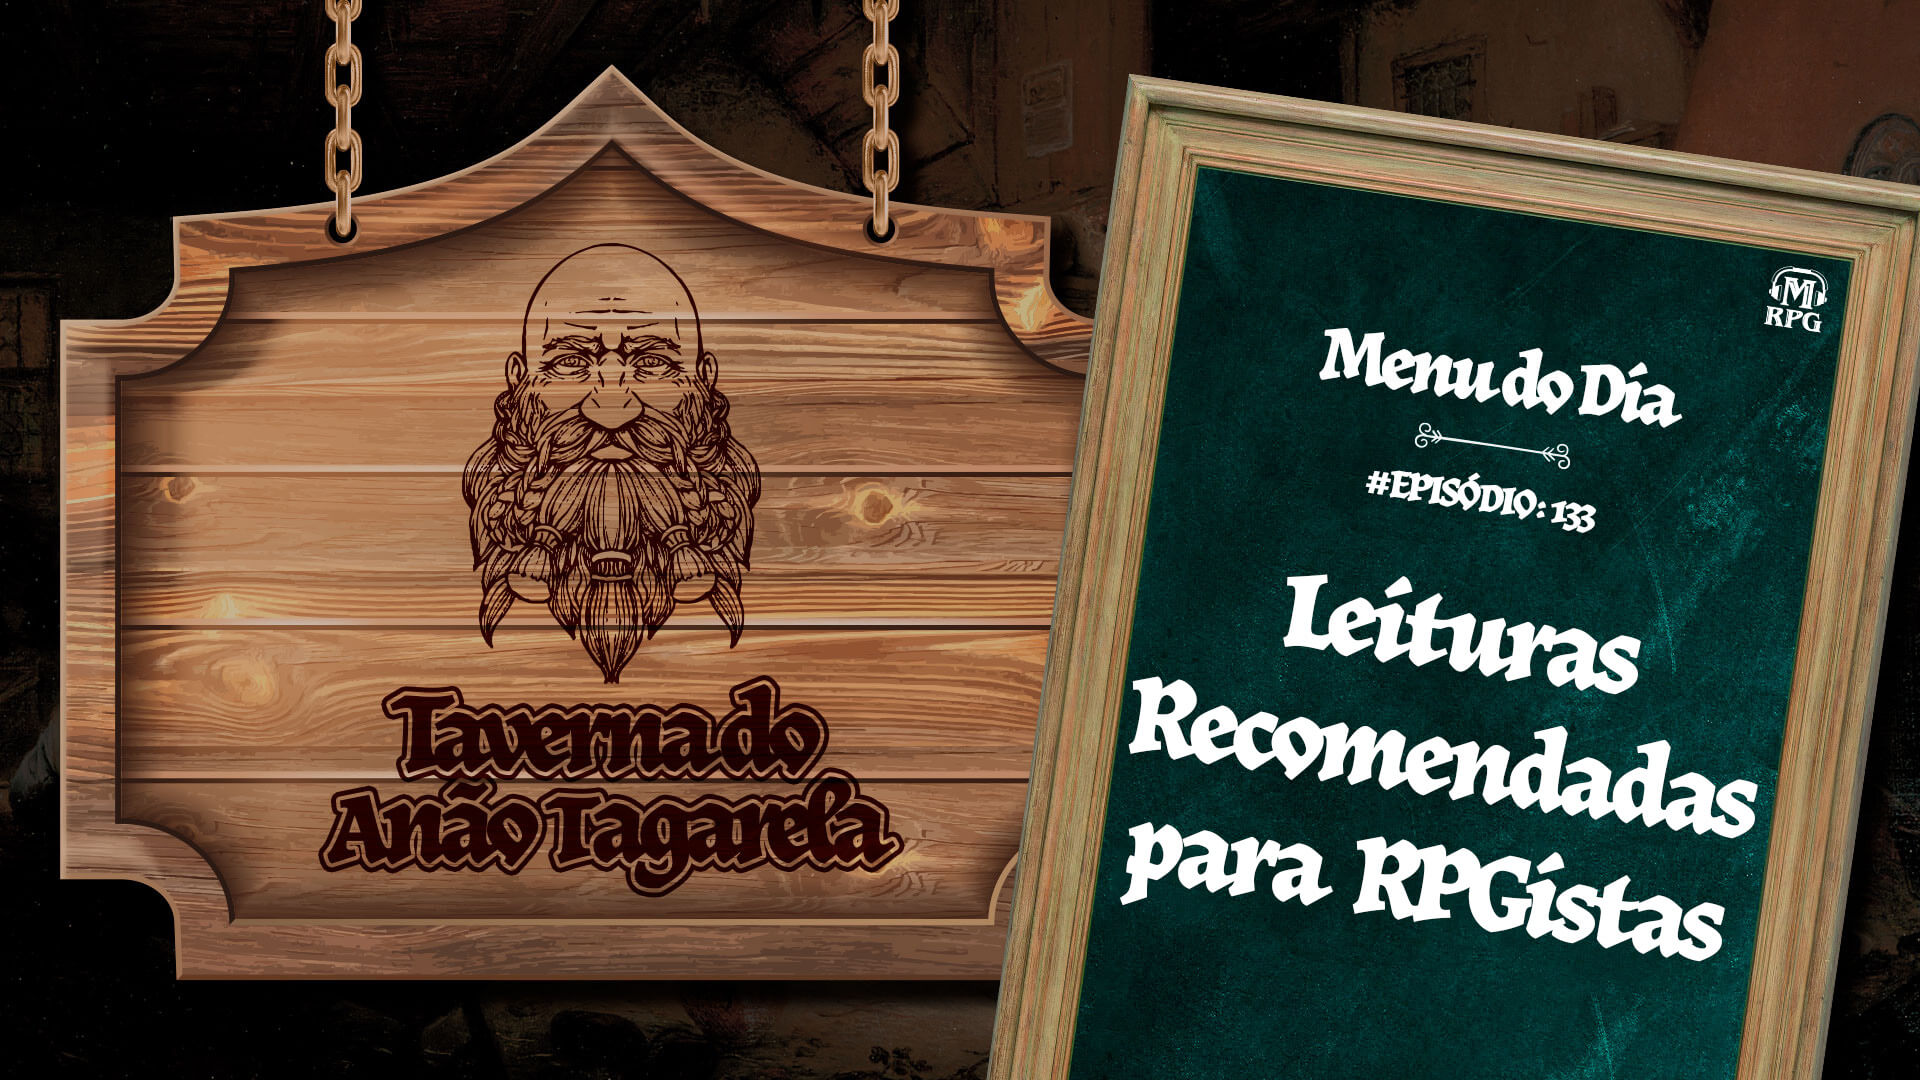 Leituras Recomendadas para RPGistas – Taverna do Anão Tagarela #133